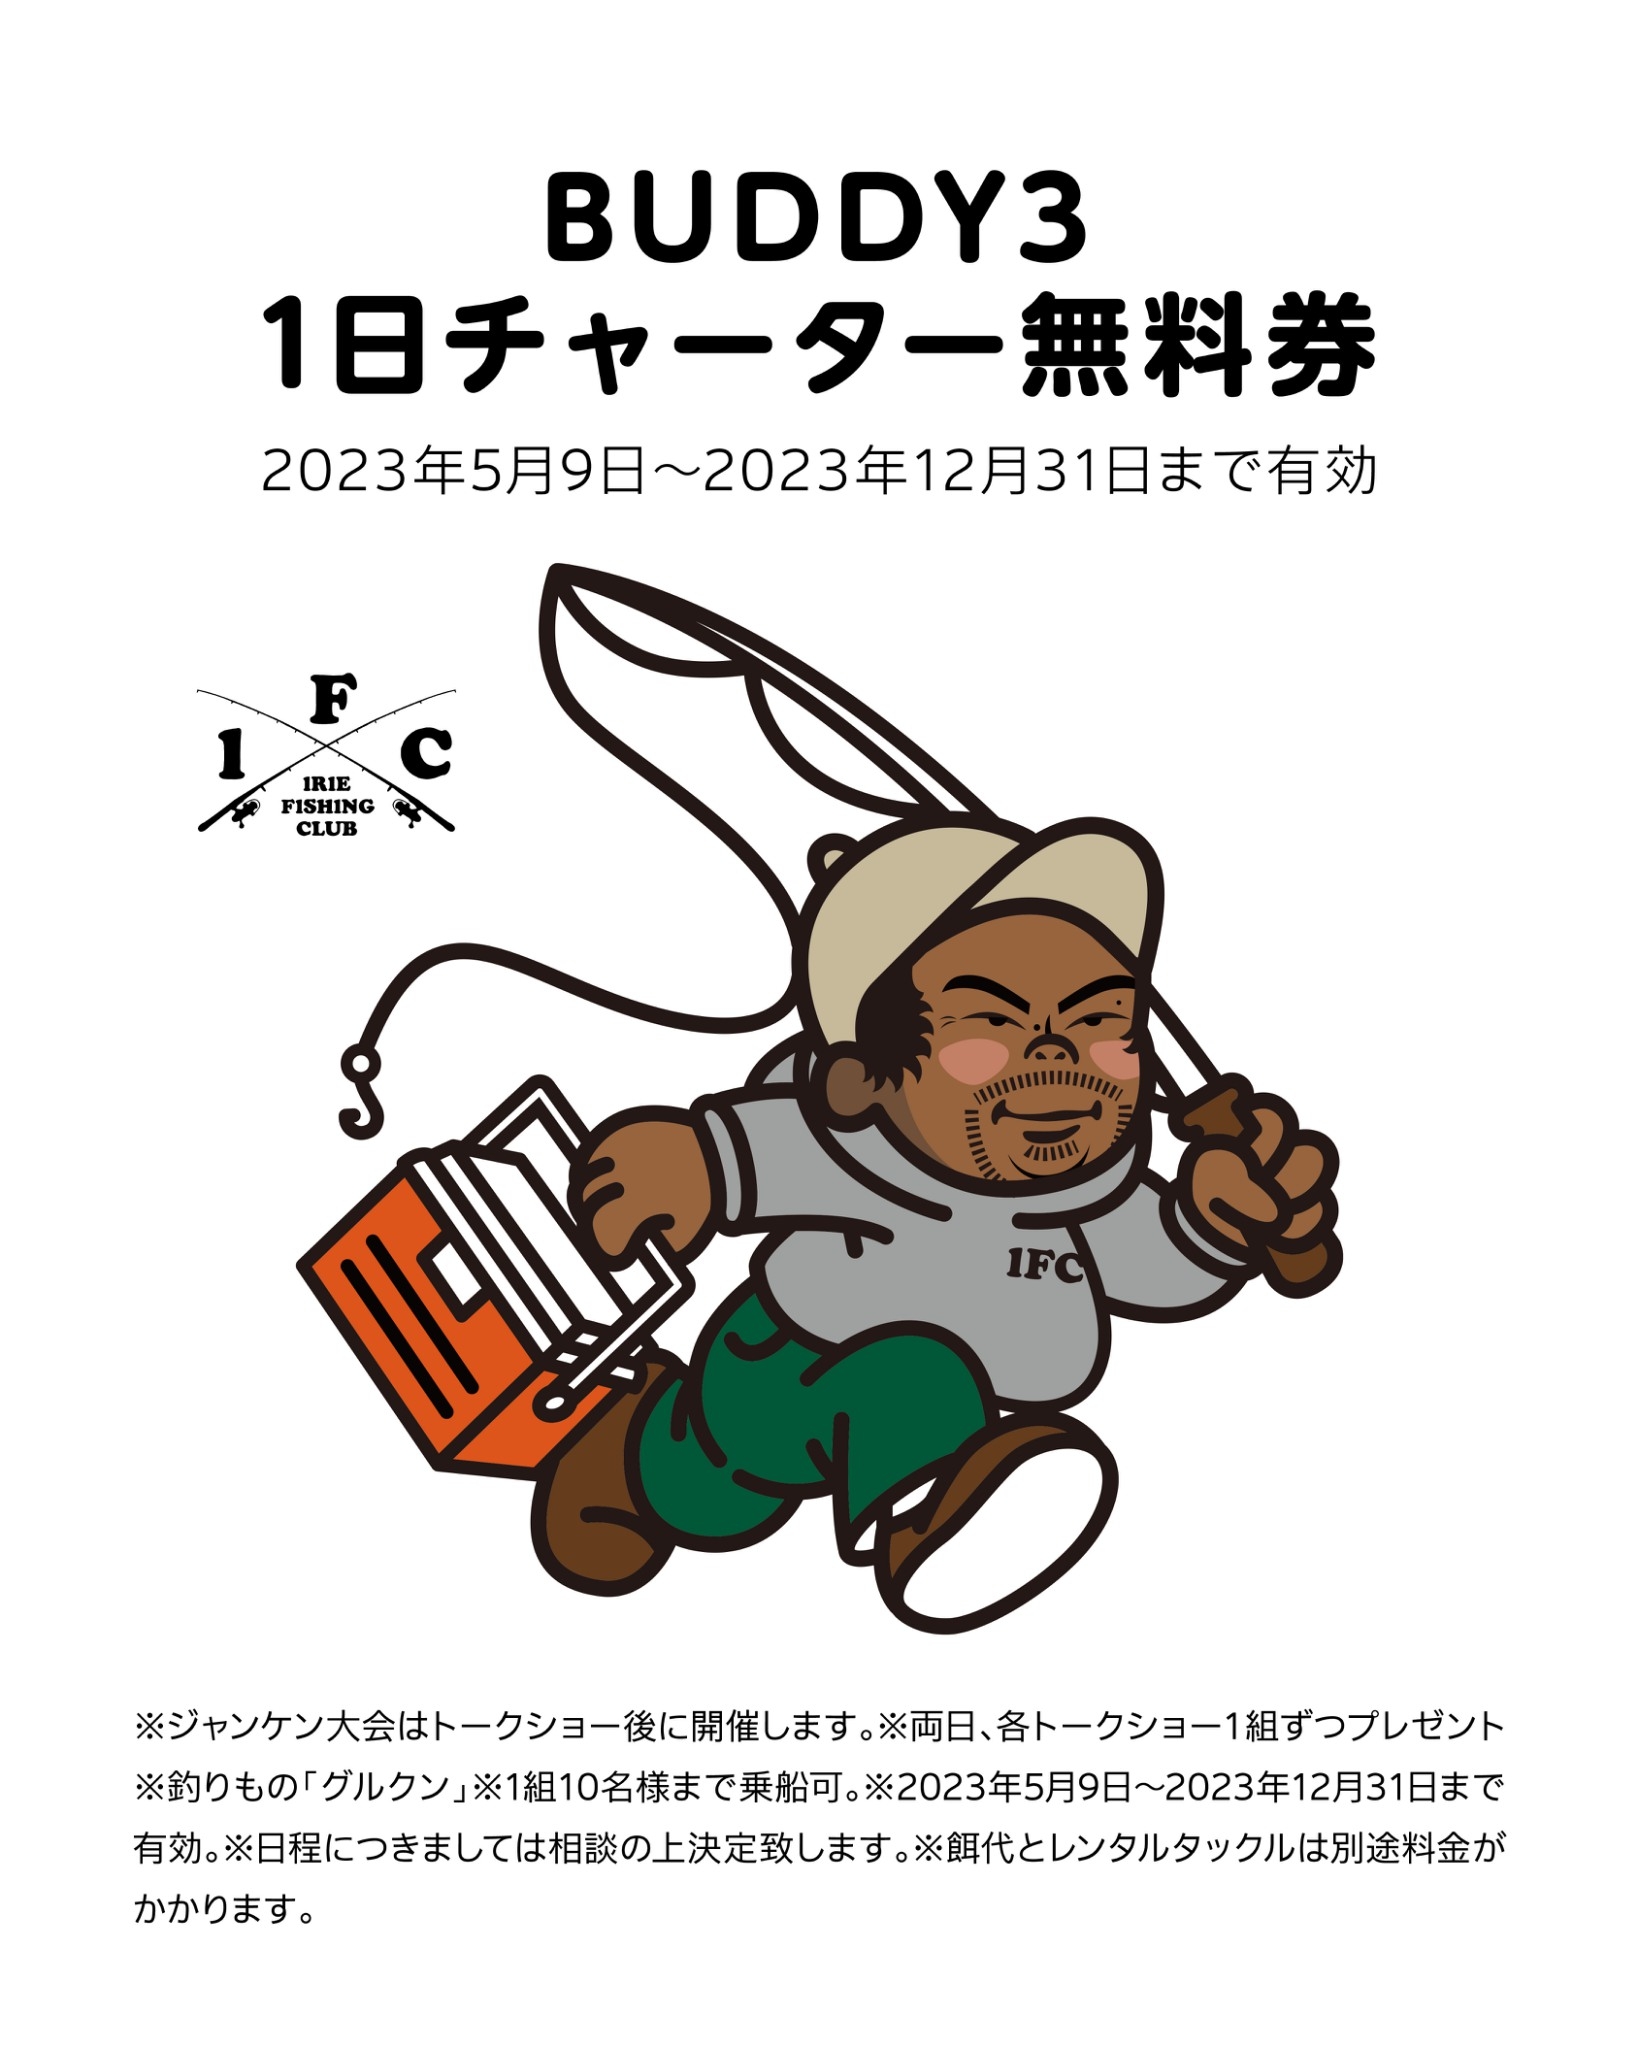 【 EVENT】沖縄フィッシングコンテンツトレードショー2023 ”BUDDY3”1日チャーター無料券プレゼント